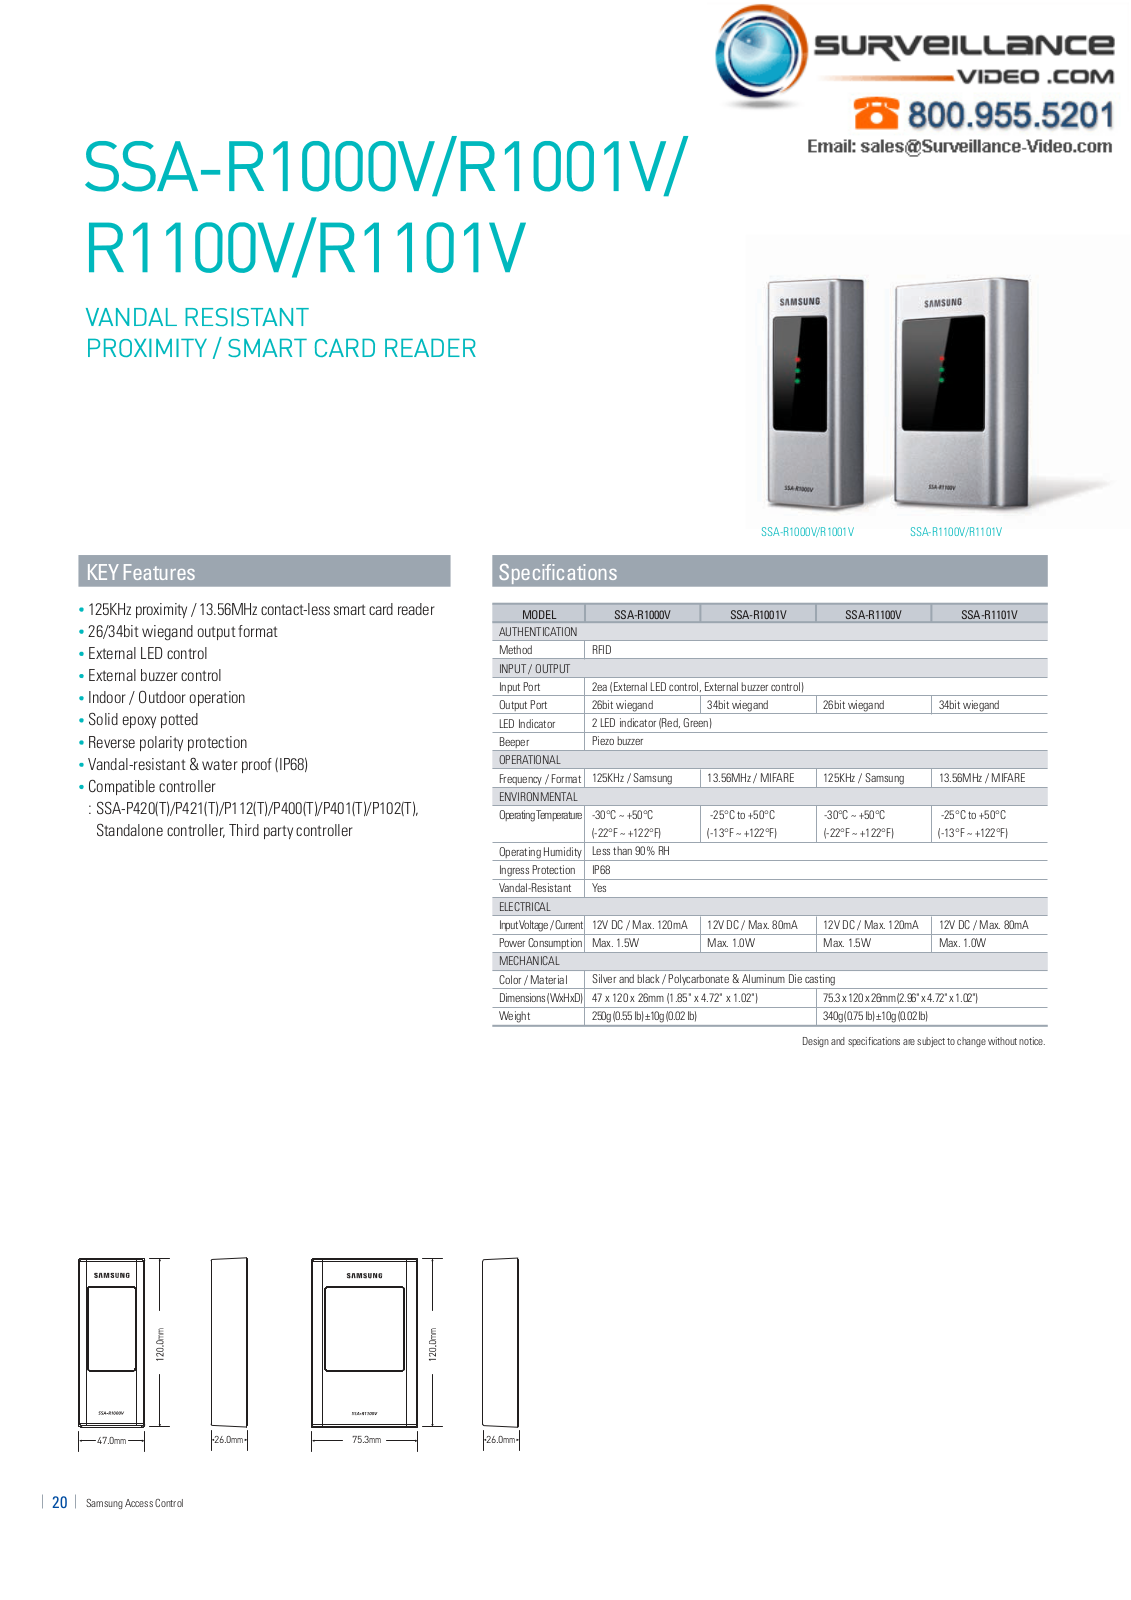 Samsung SSA-R1101V, SSA-R1100V, SSA-R1001V, SSA-R1000V Specsheet